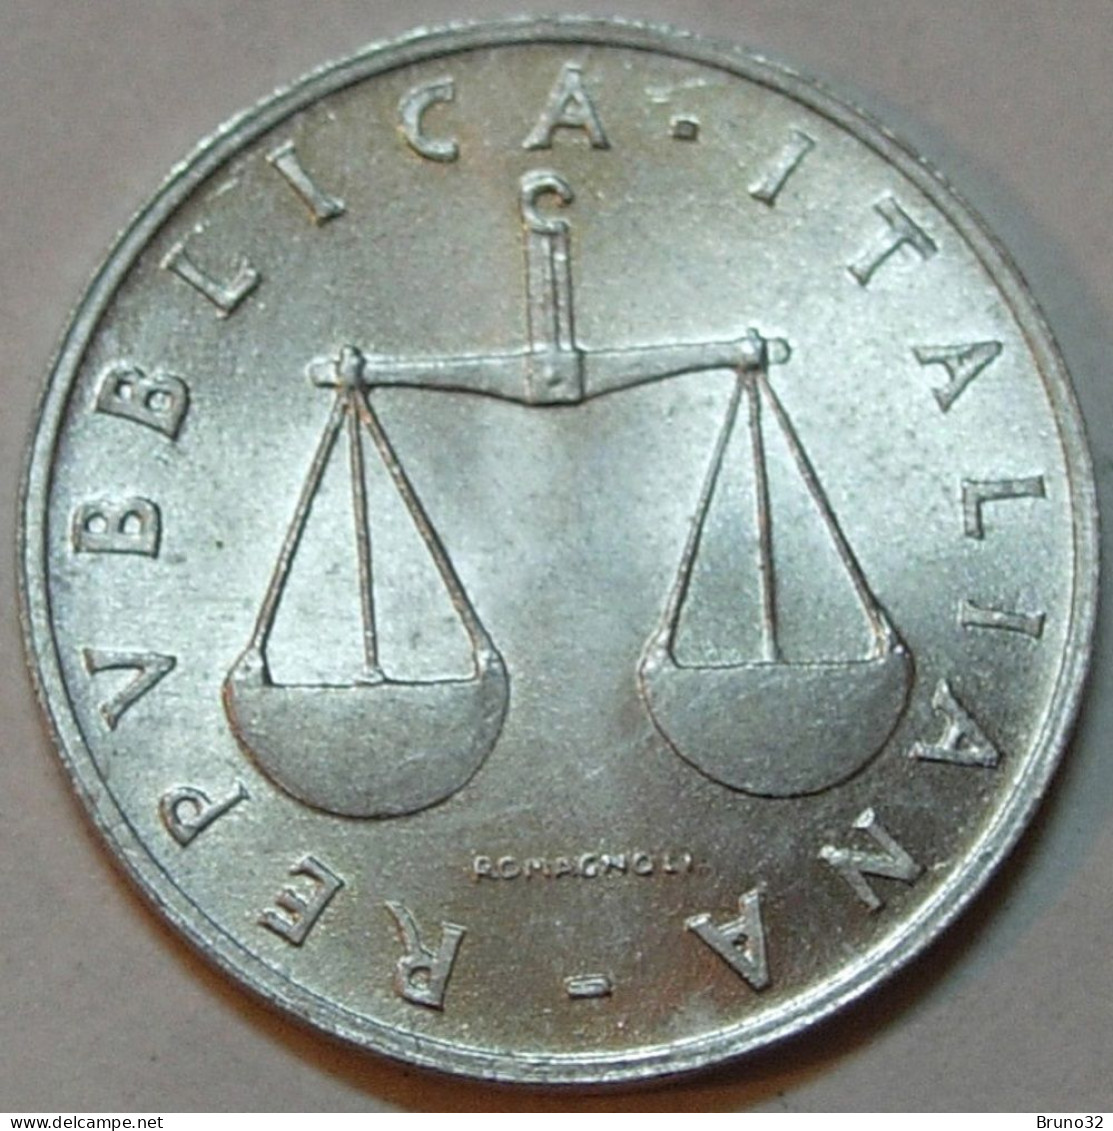 ITALIA - Lire 1 1970 - FDC/Unc Da Rotolino/from Roll 1 Moneta/1 Coin - 1 Lire